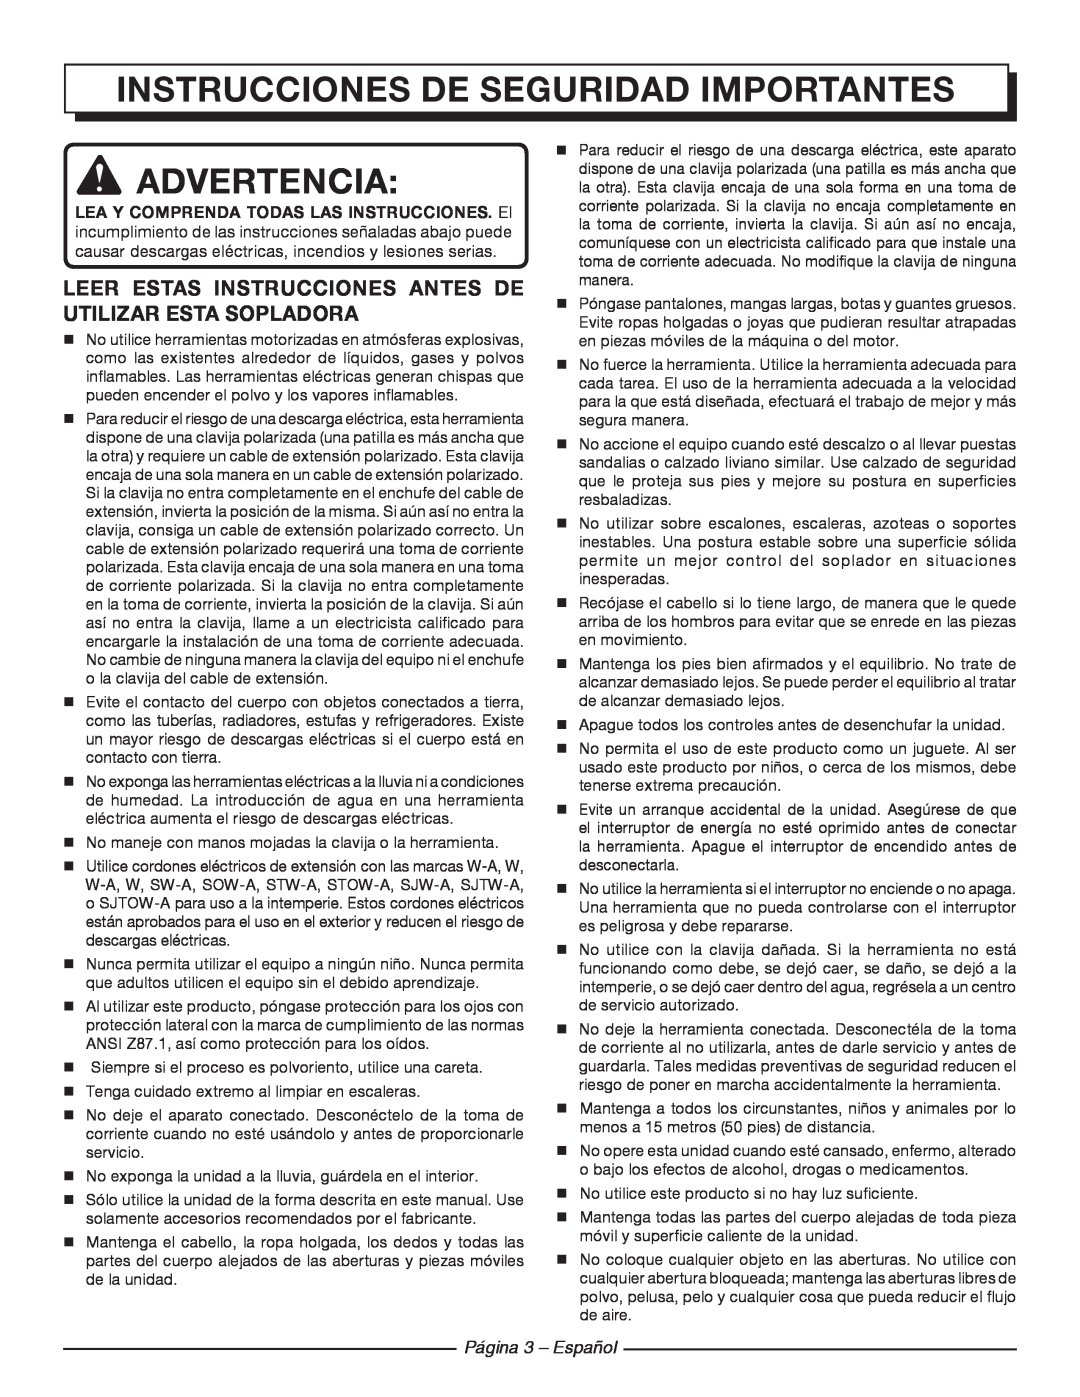 Homelite UT42100 manuel dutilisation Instrucciones de seguridad importantes, Advertencia, Página 3 - Español 